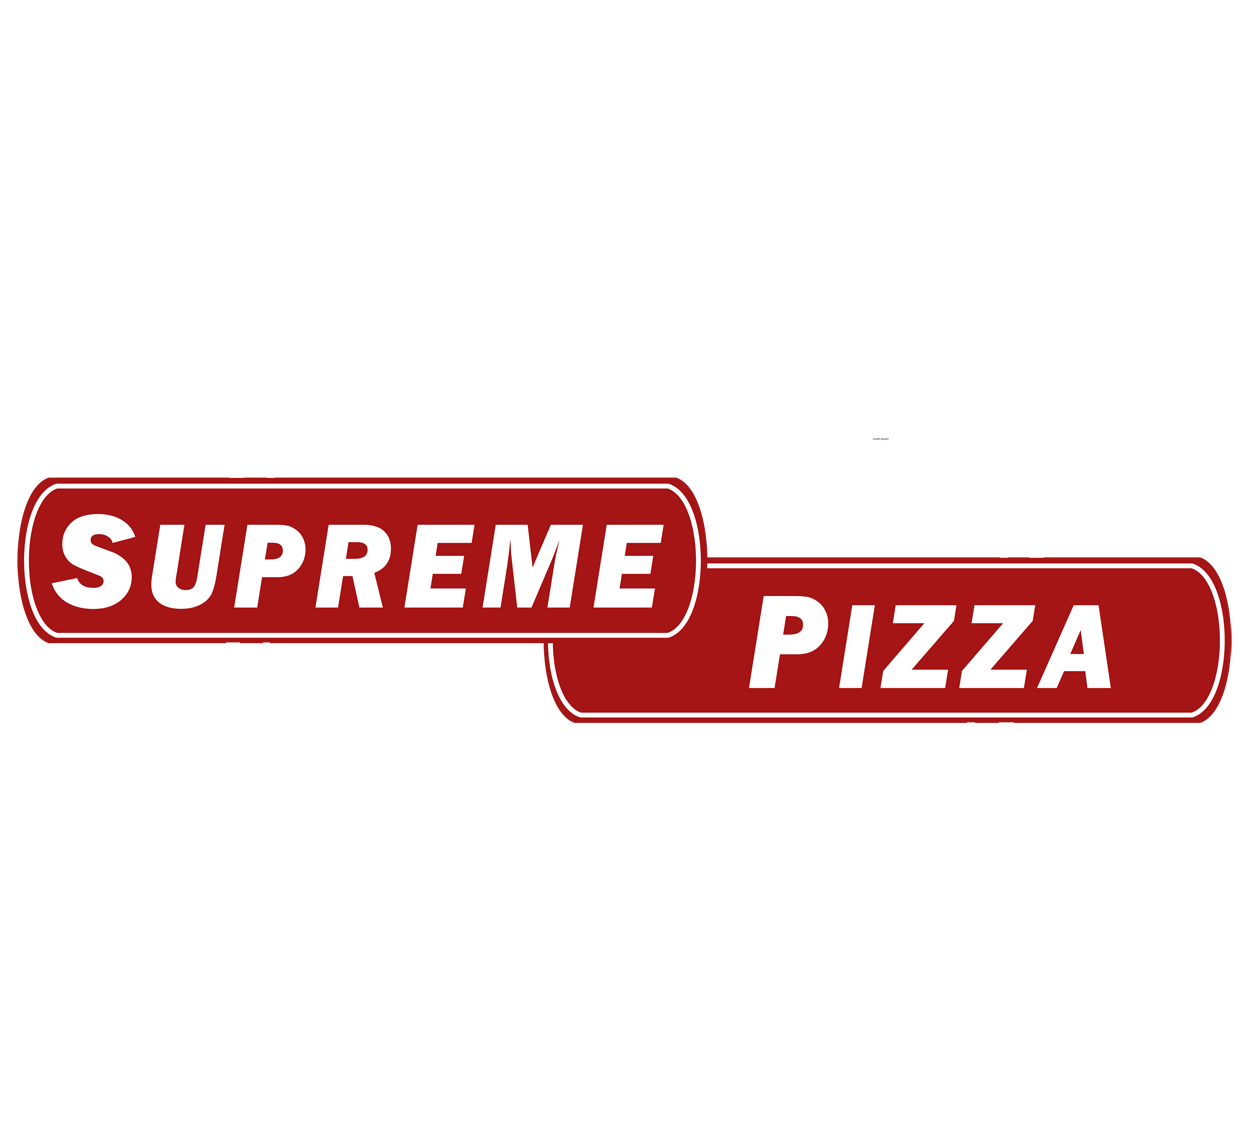 Supreme Pizza Vancouver